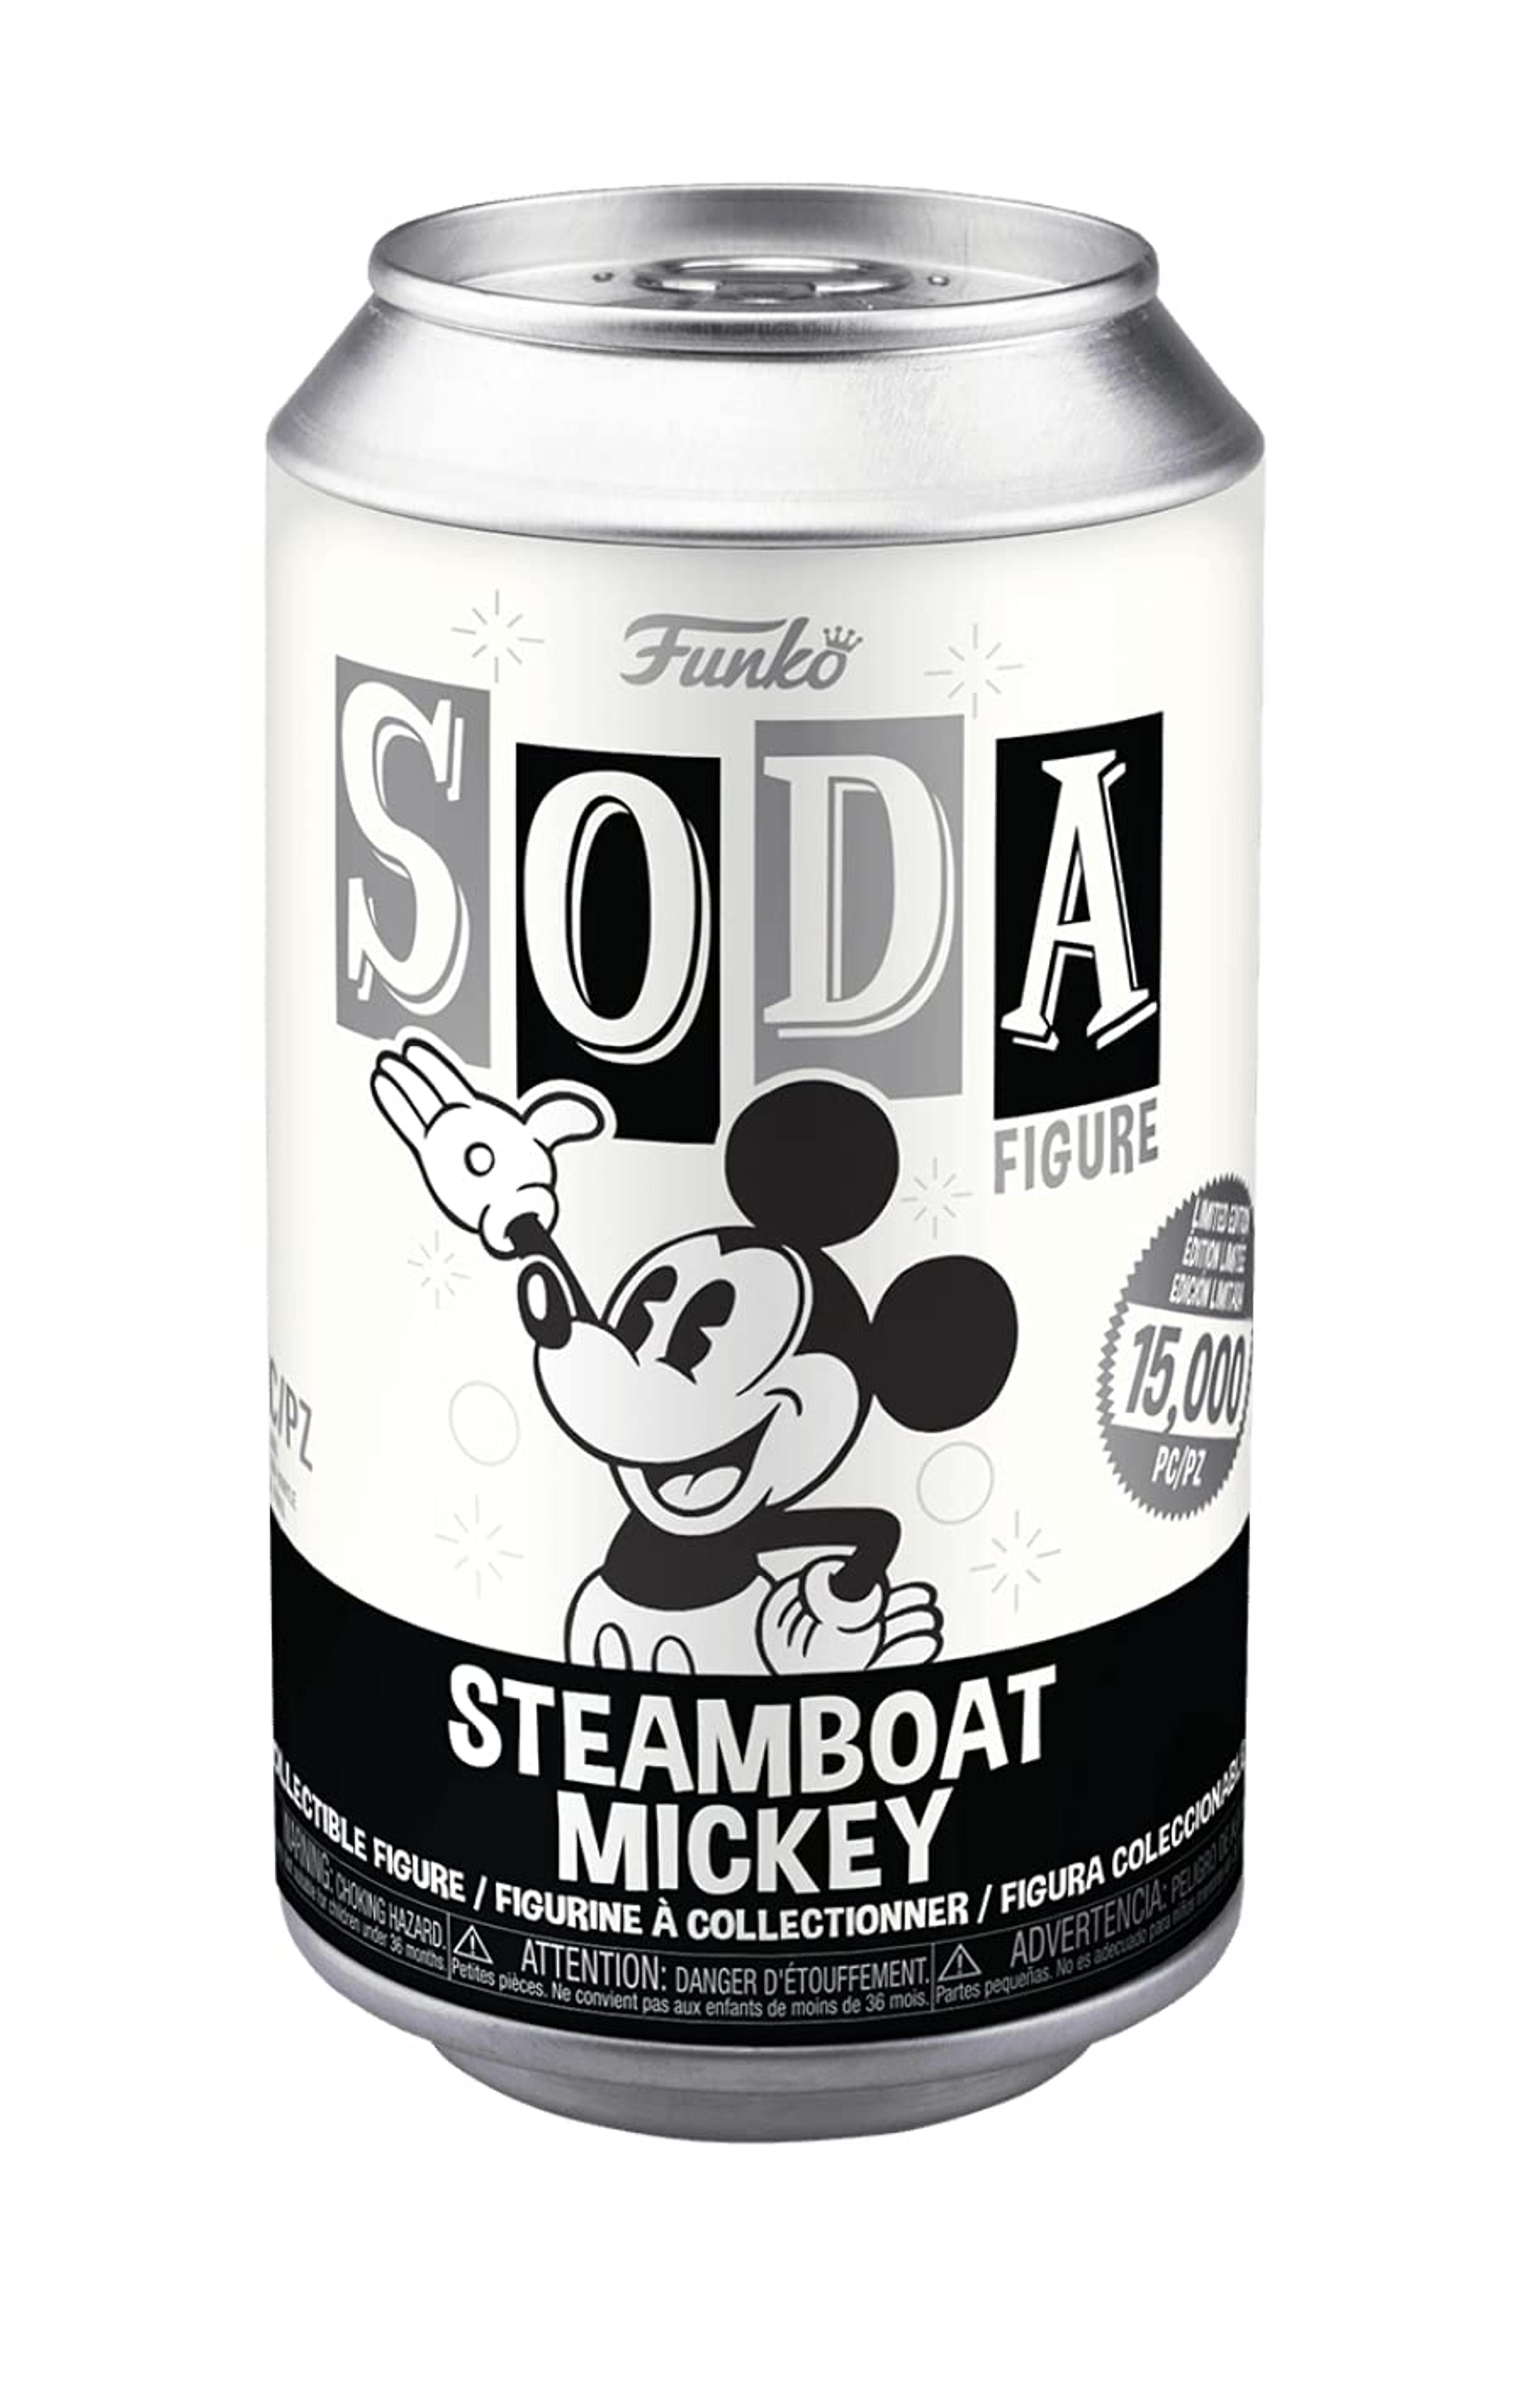 Funko Soda Disney Steamboat Mickey LE 15000 Funko Shop Exclusive